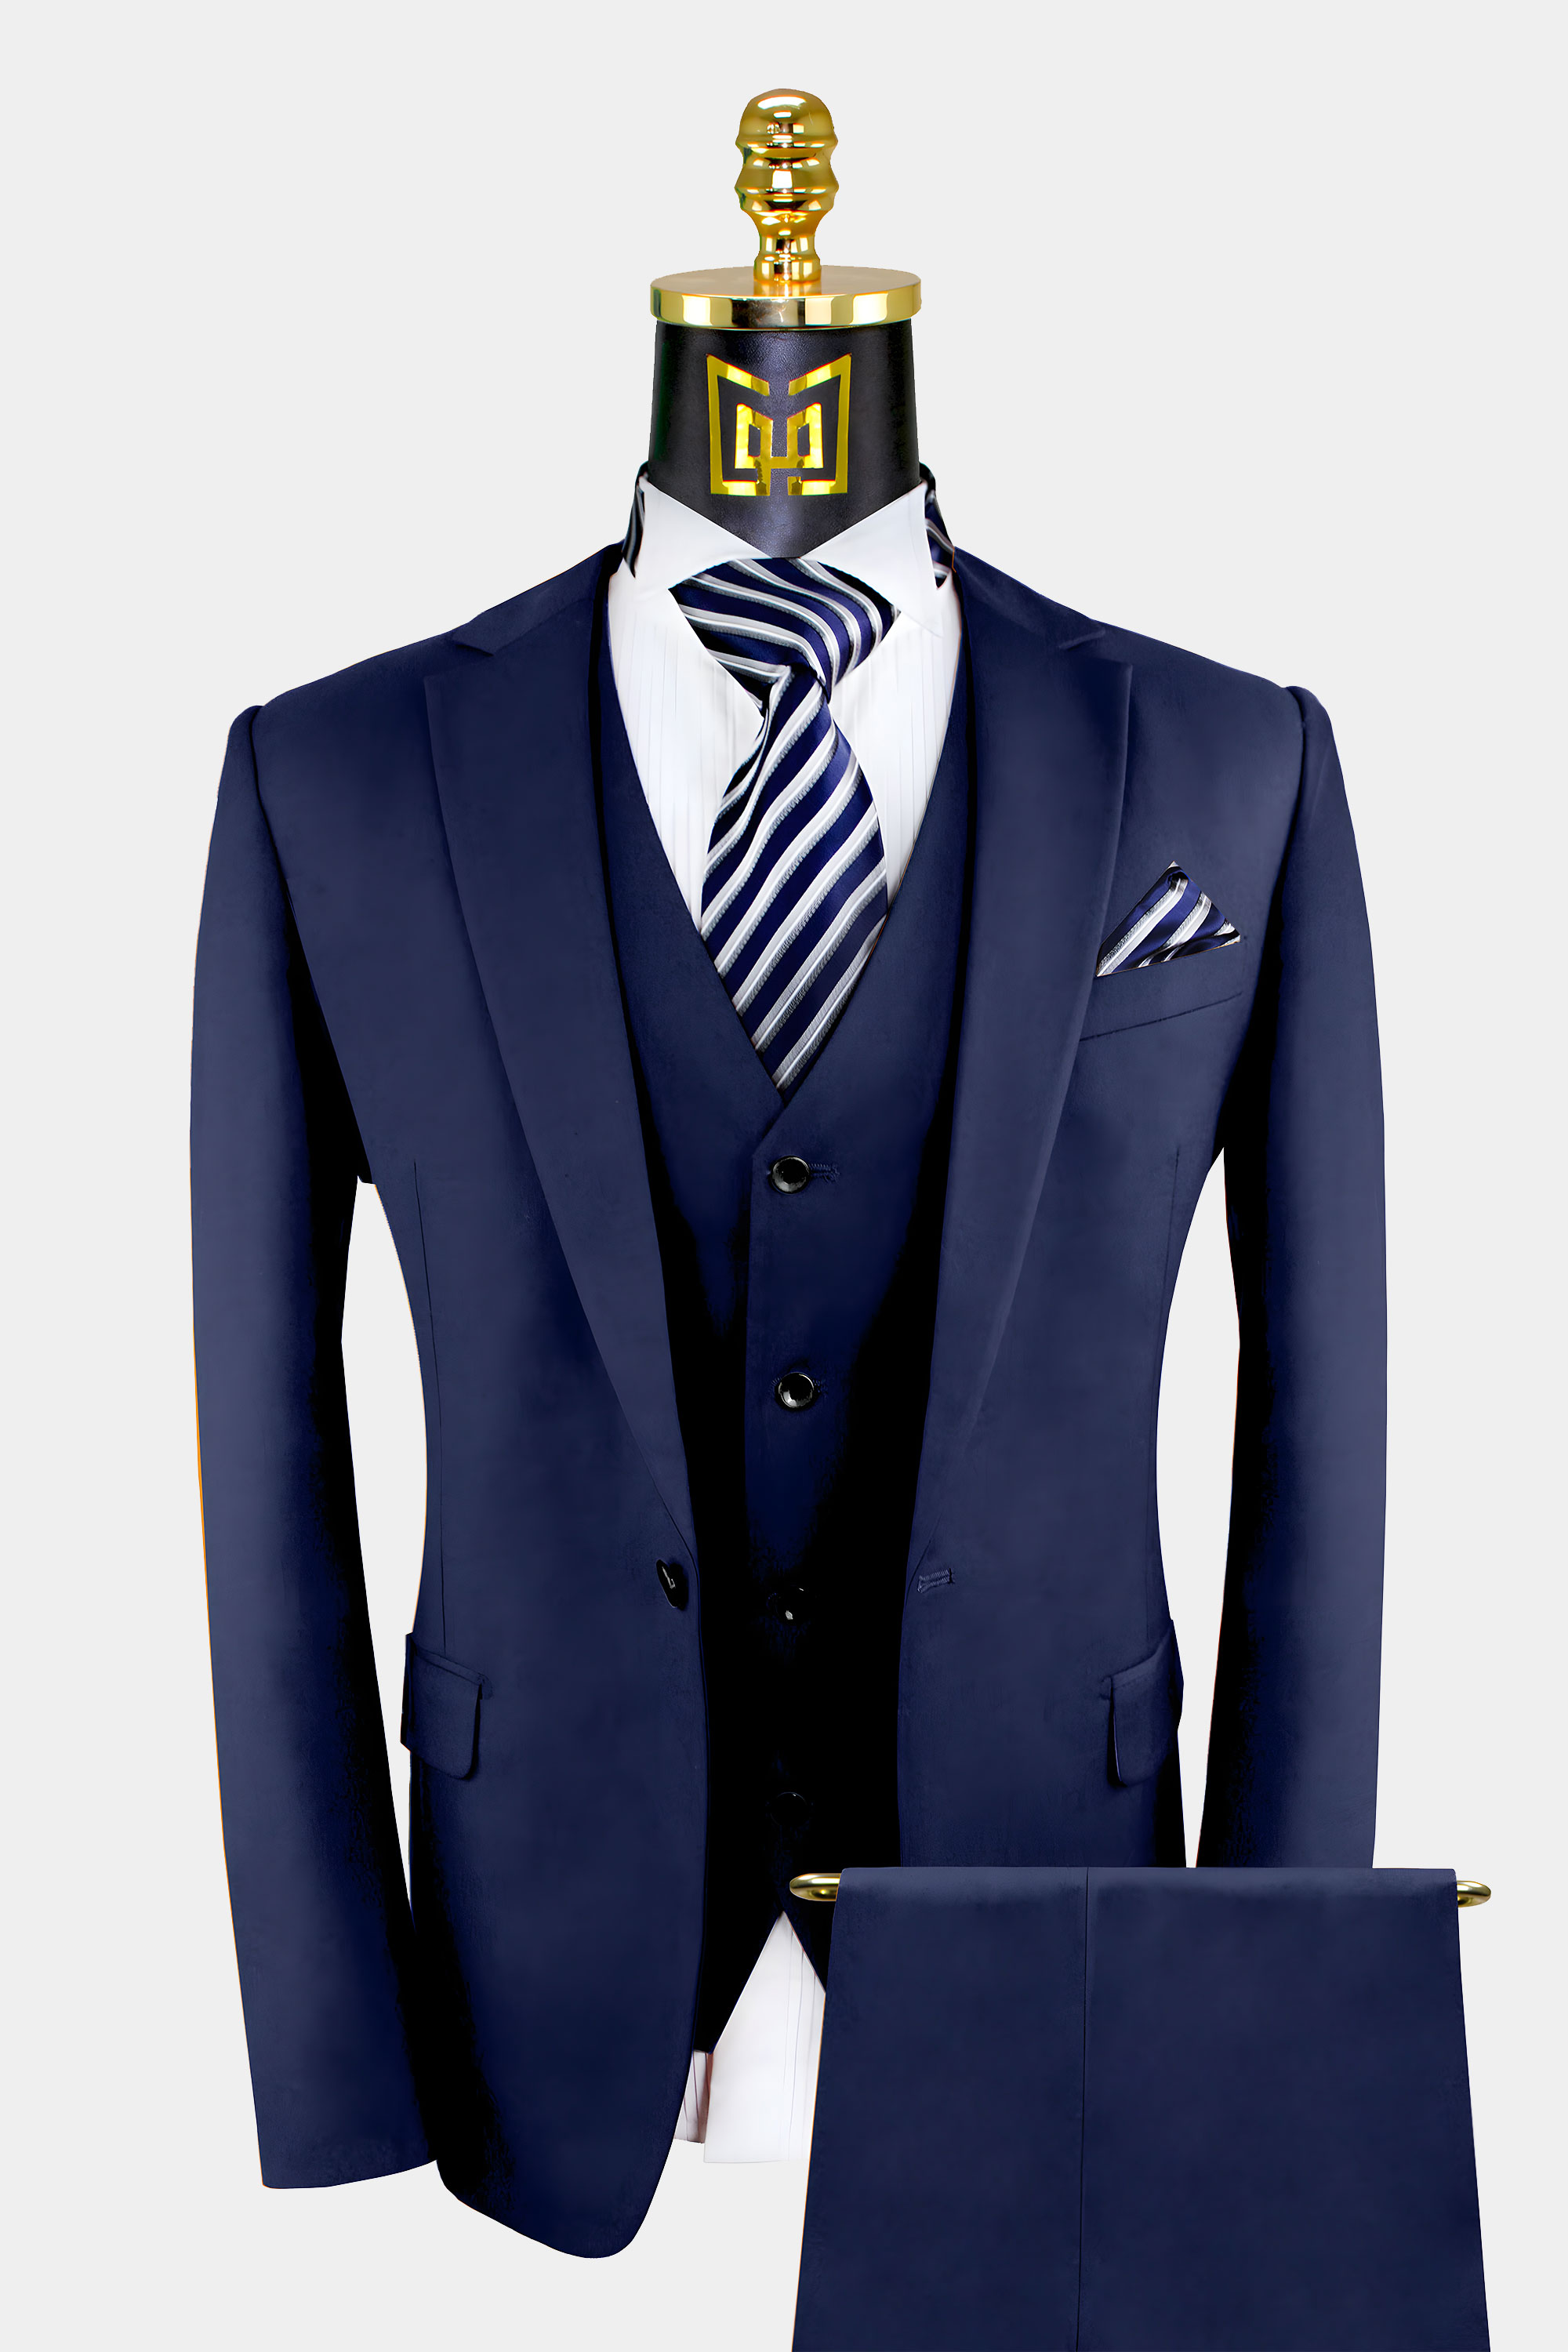 3 Piece Navy Blue Suit For Men Wedding Groom Prom Tuxedo From Gentlemansguru.Com  